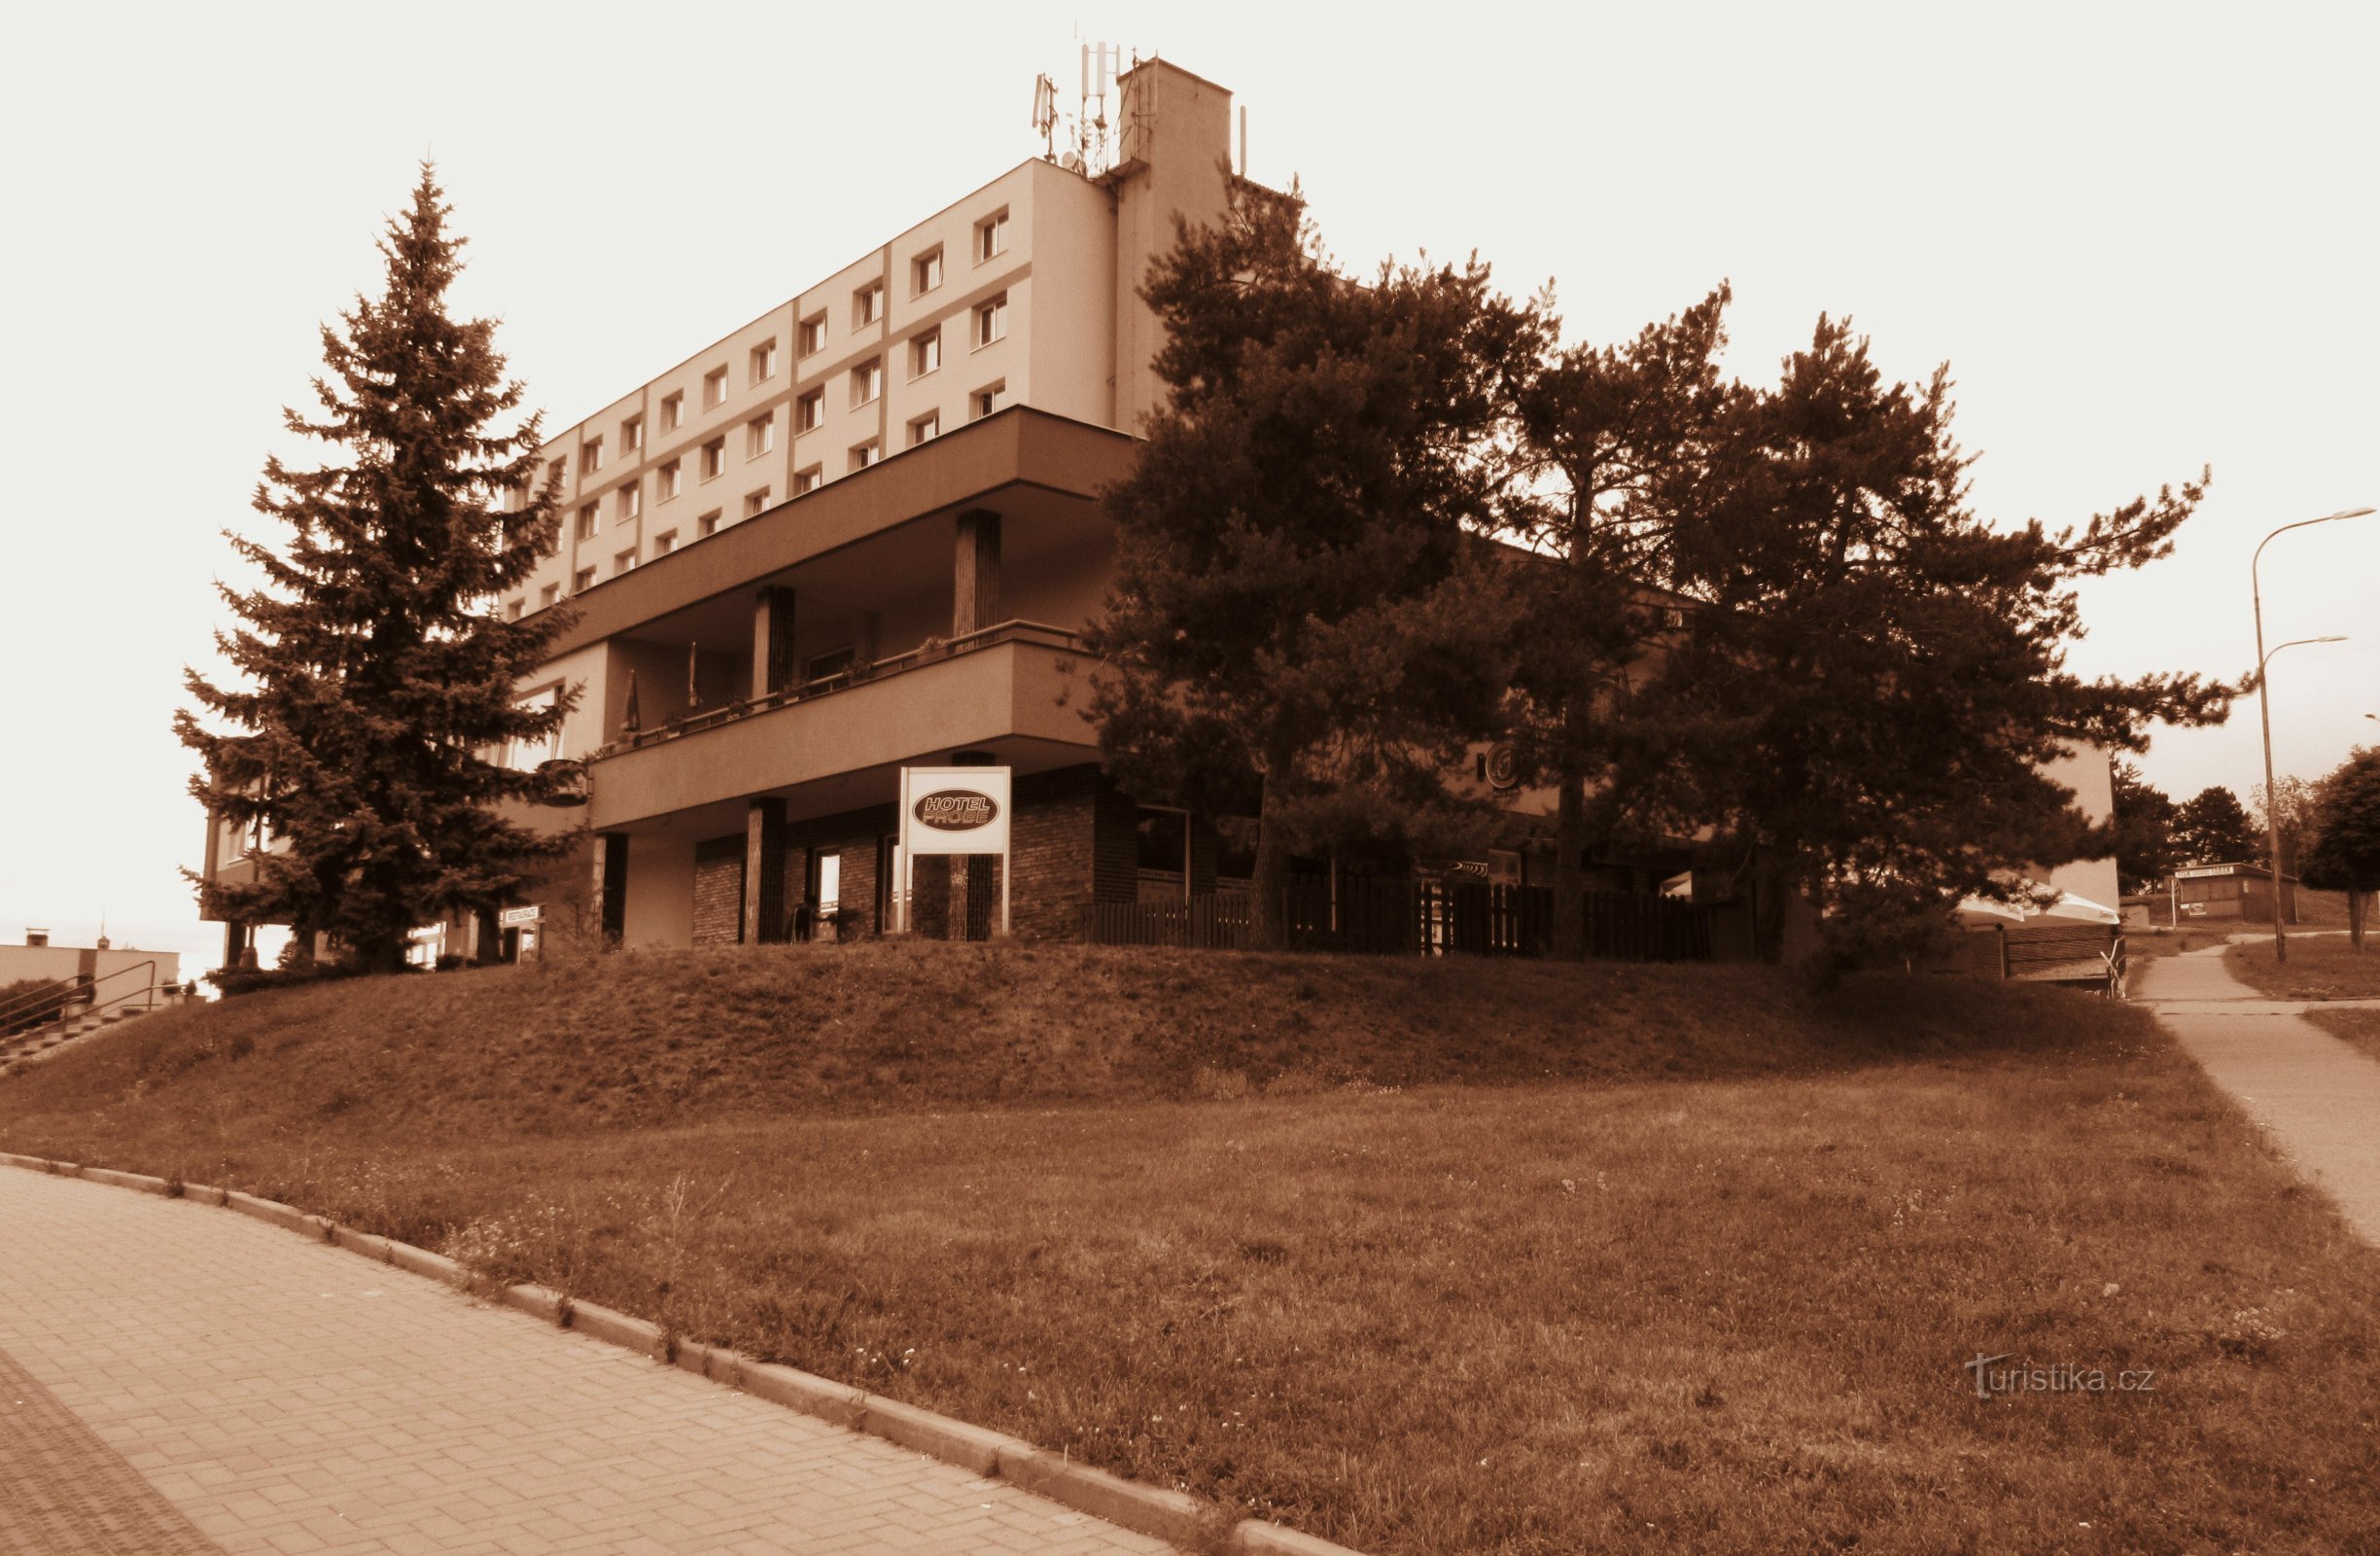 Hotel Sonde in Blansko